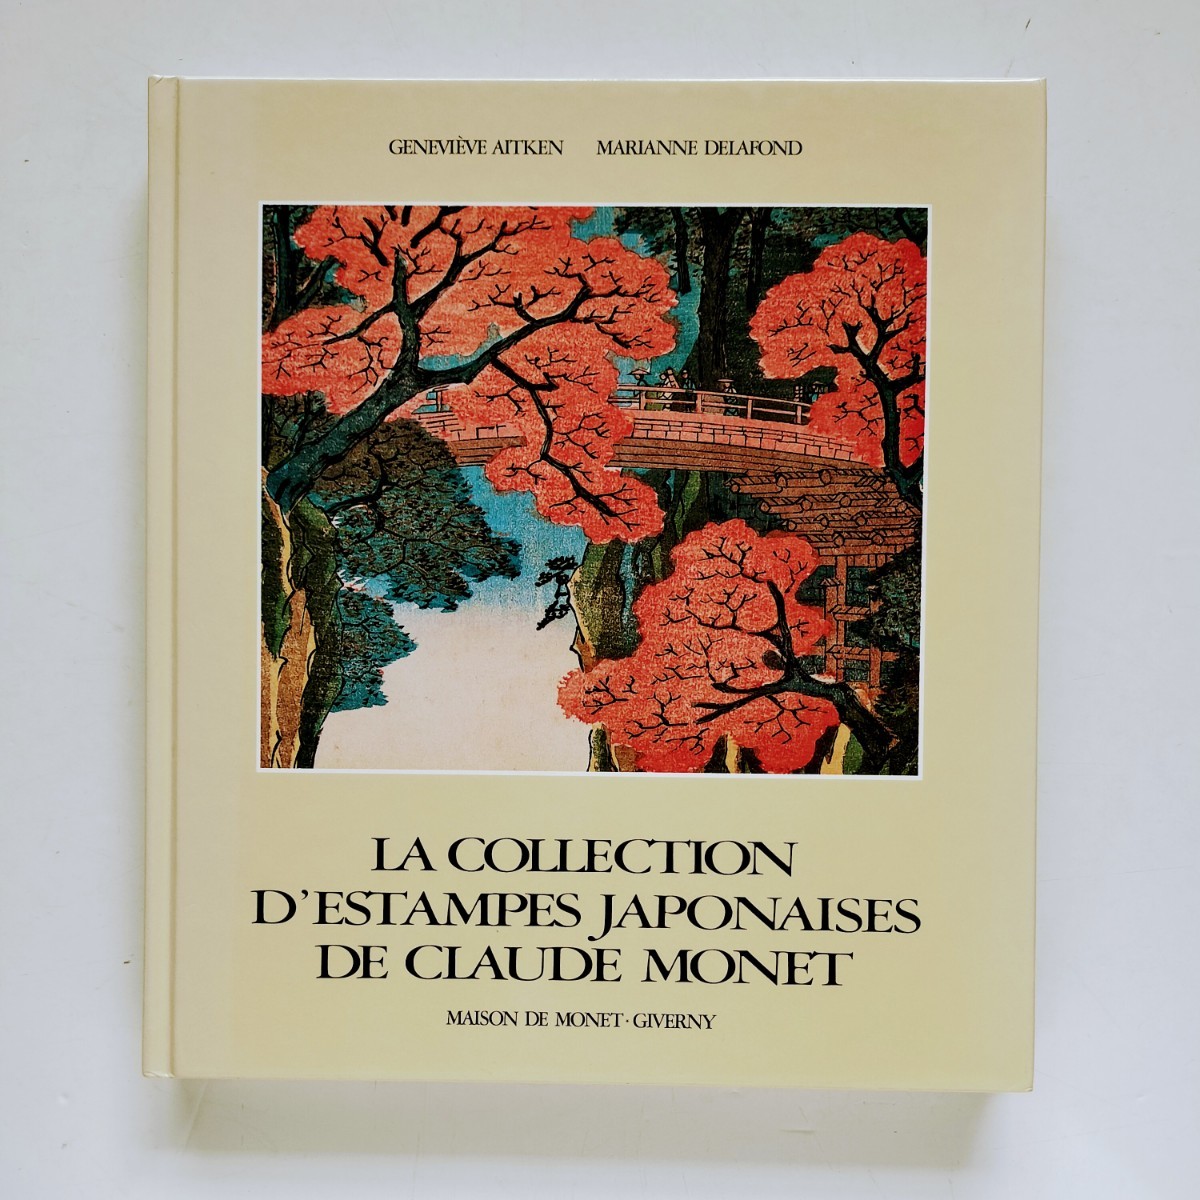 a5. (프랑스어) 클로드 모네의 우키요에 컬렉션 La Collection d'Estampes Japonaises De Claude Monet a Giverny, 그림, 그림책, 수집, 그림책